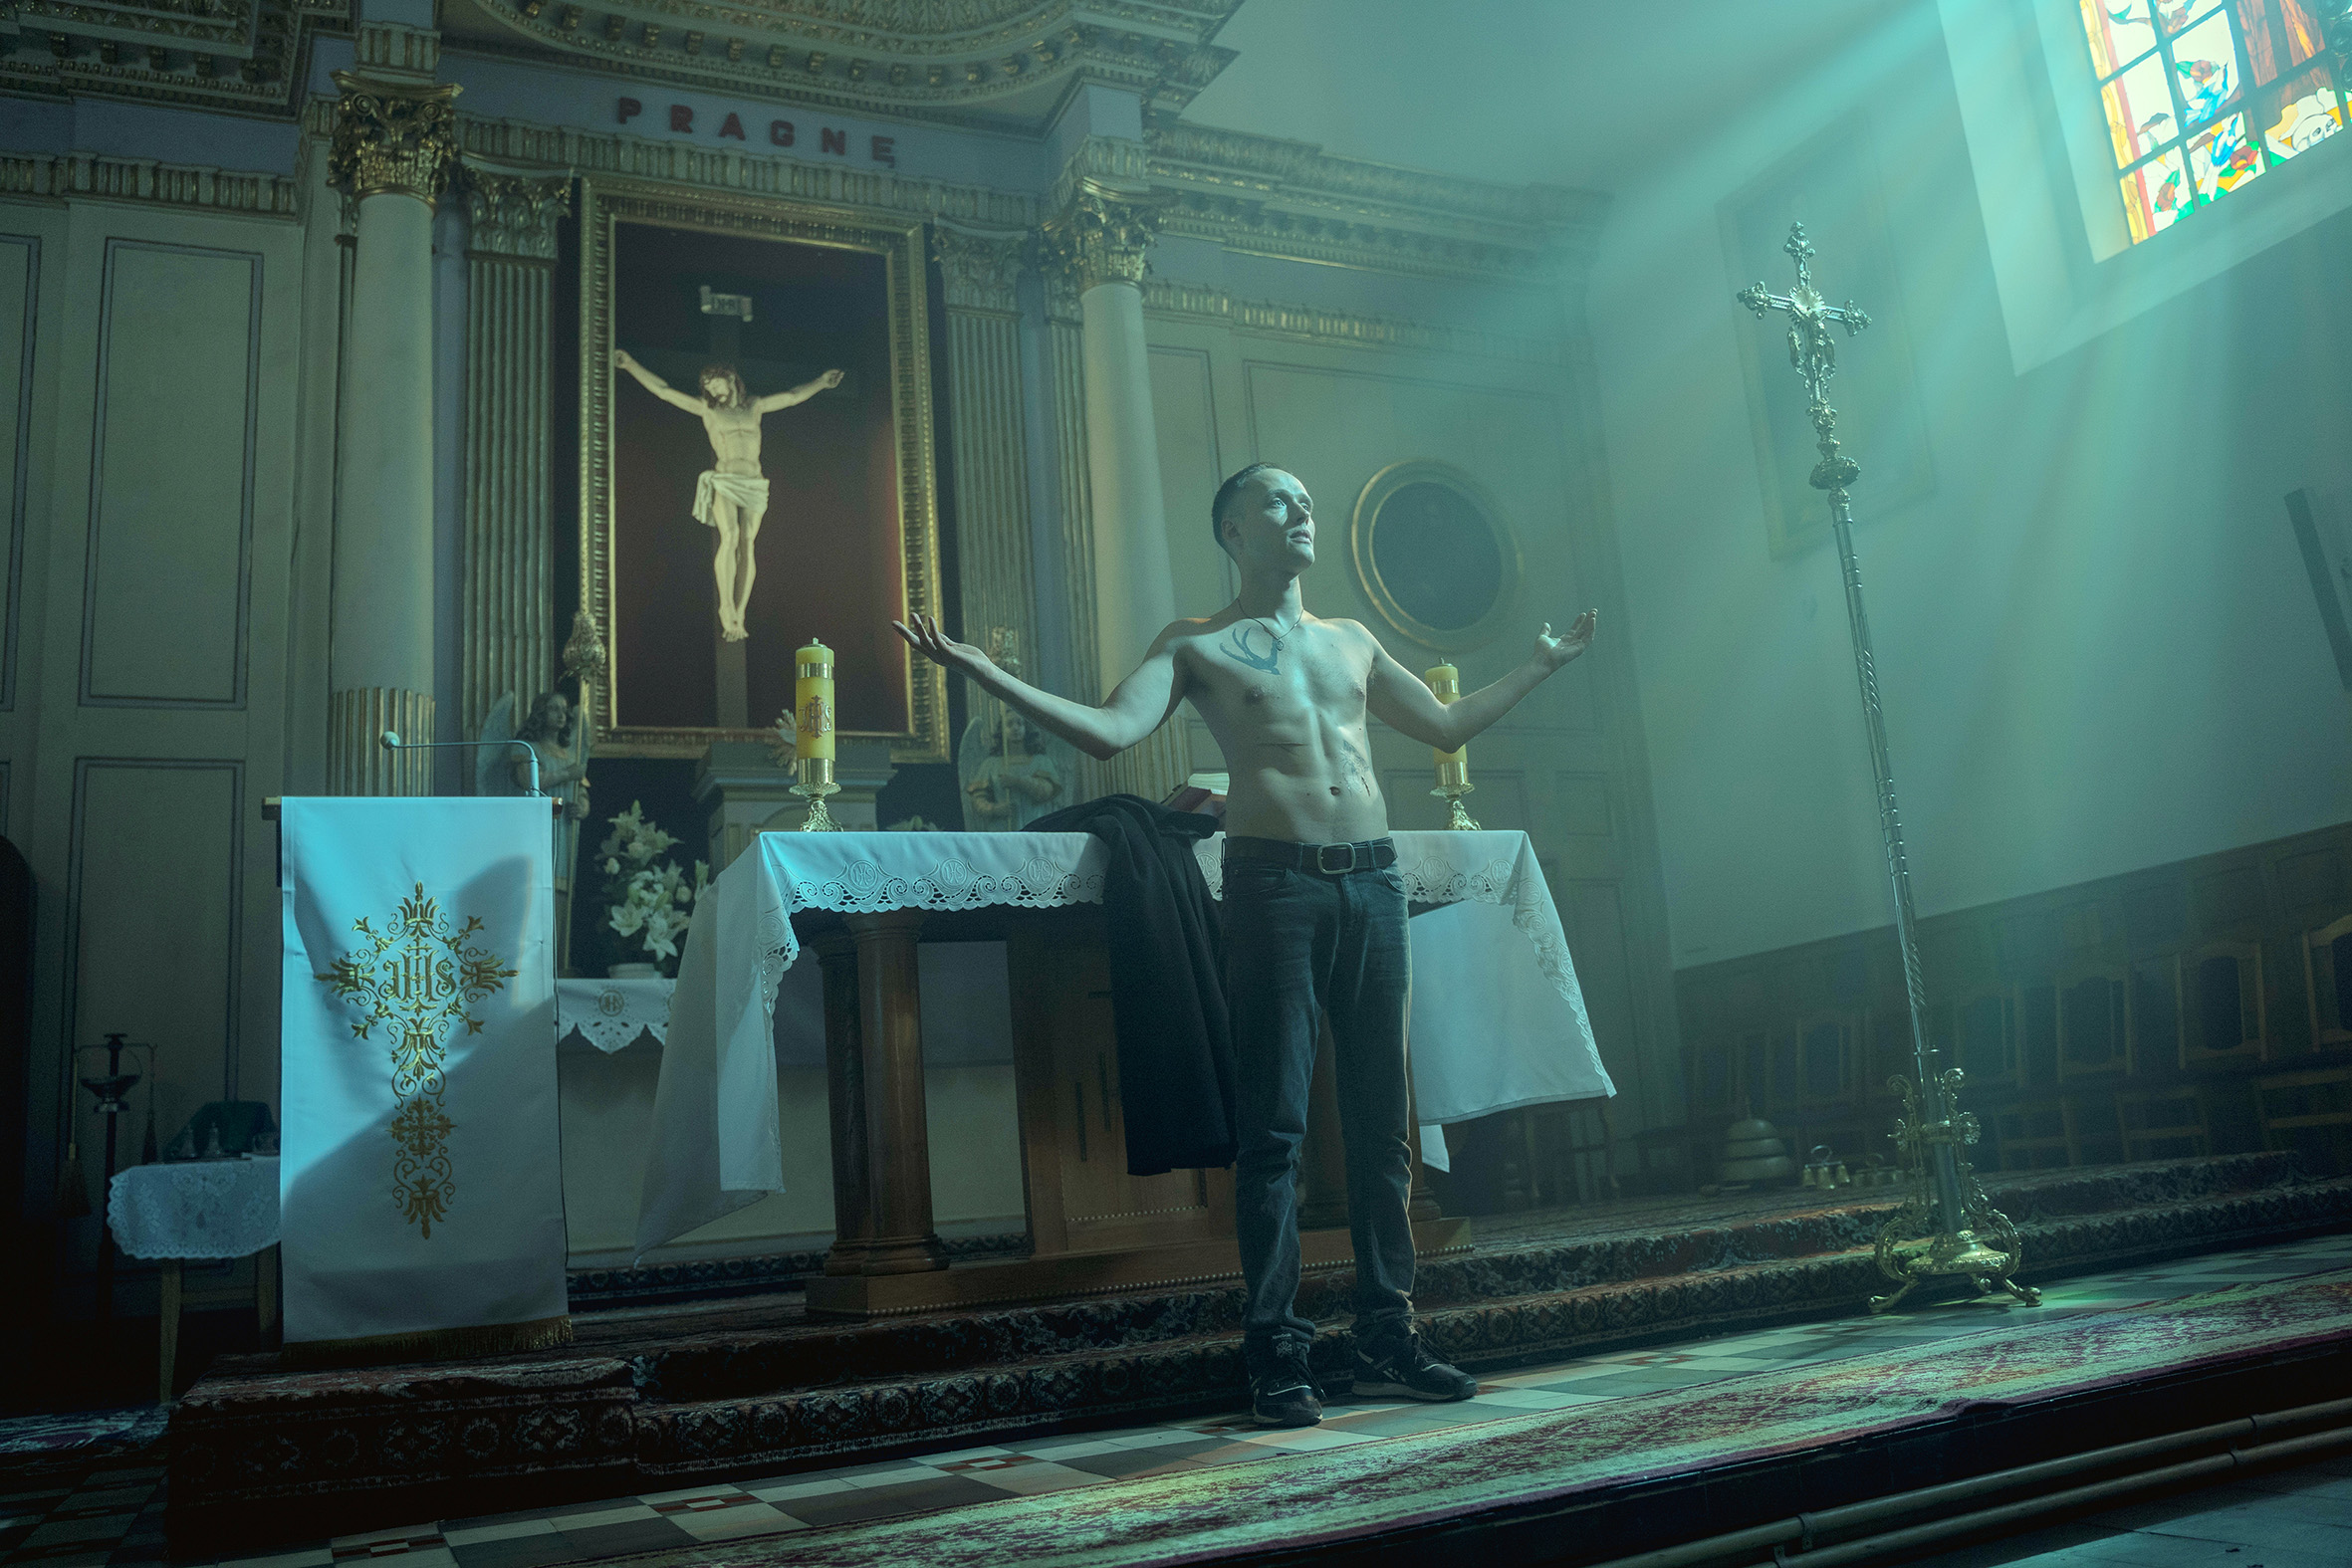 Polnische Filmwoche | Film: Corpus Christi / Boże ciało